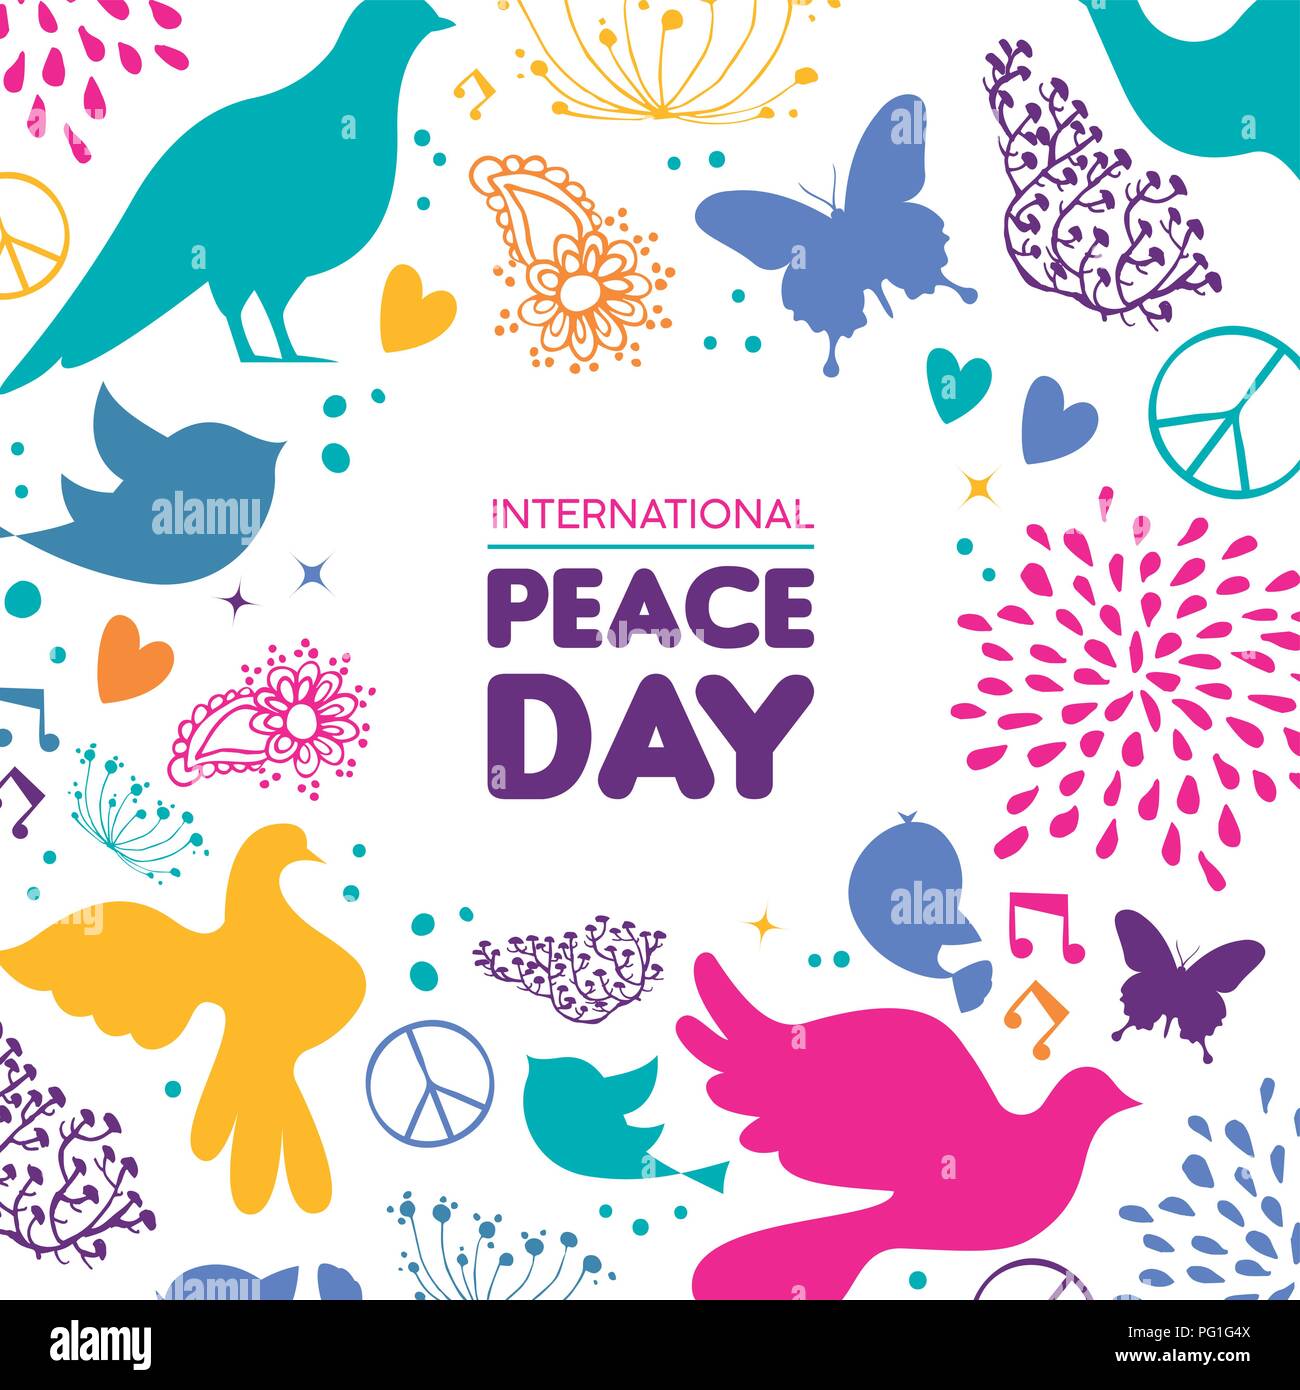 Internationaler Friedenstag Abbildung, bunte friedliche Symbole in der Hand gezeichneten Stil mit Typografie Zitat. Hoffnungsvoll Taube, Natur Dekoration und Feder pl Stock Vektor